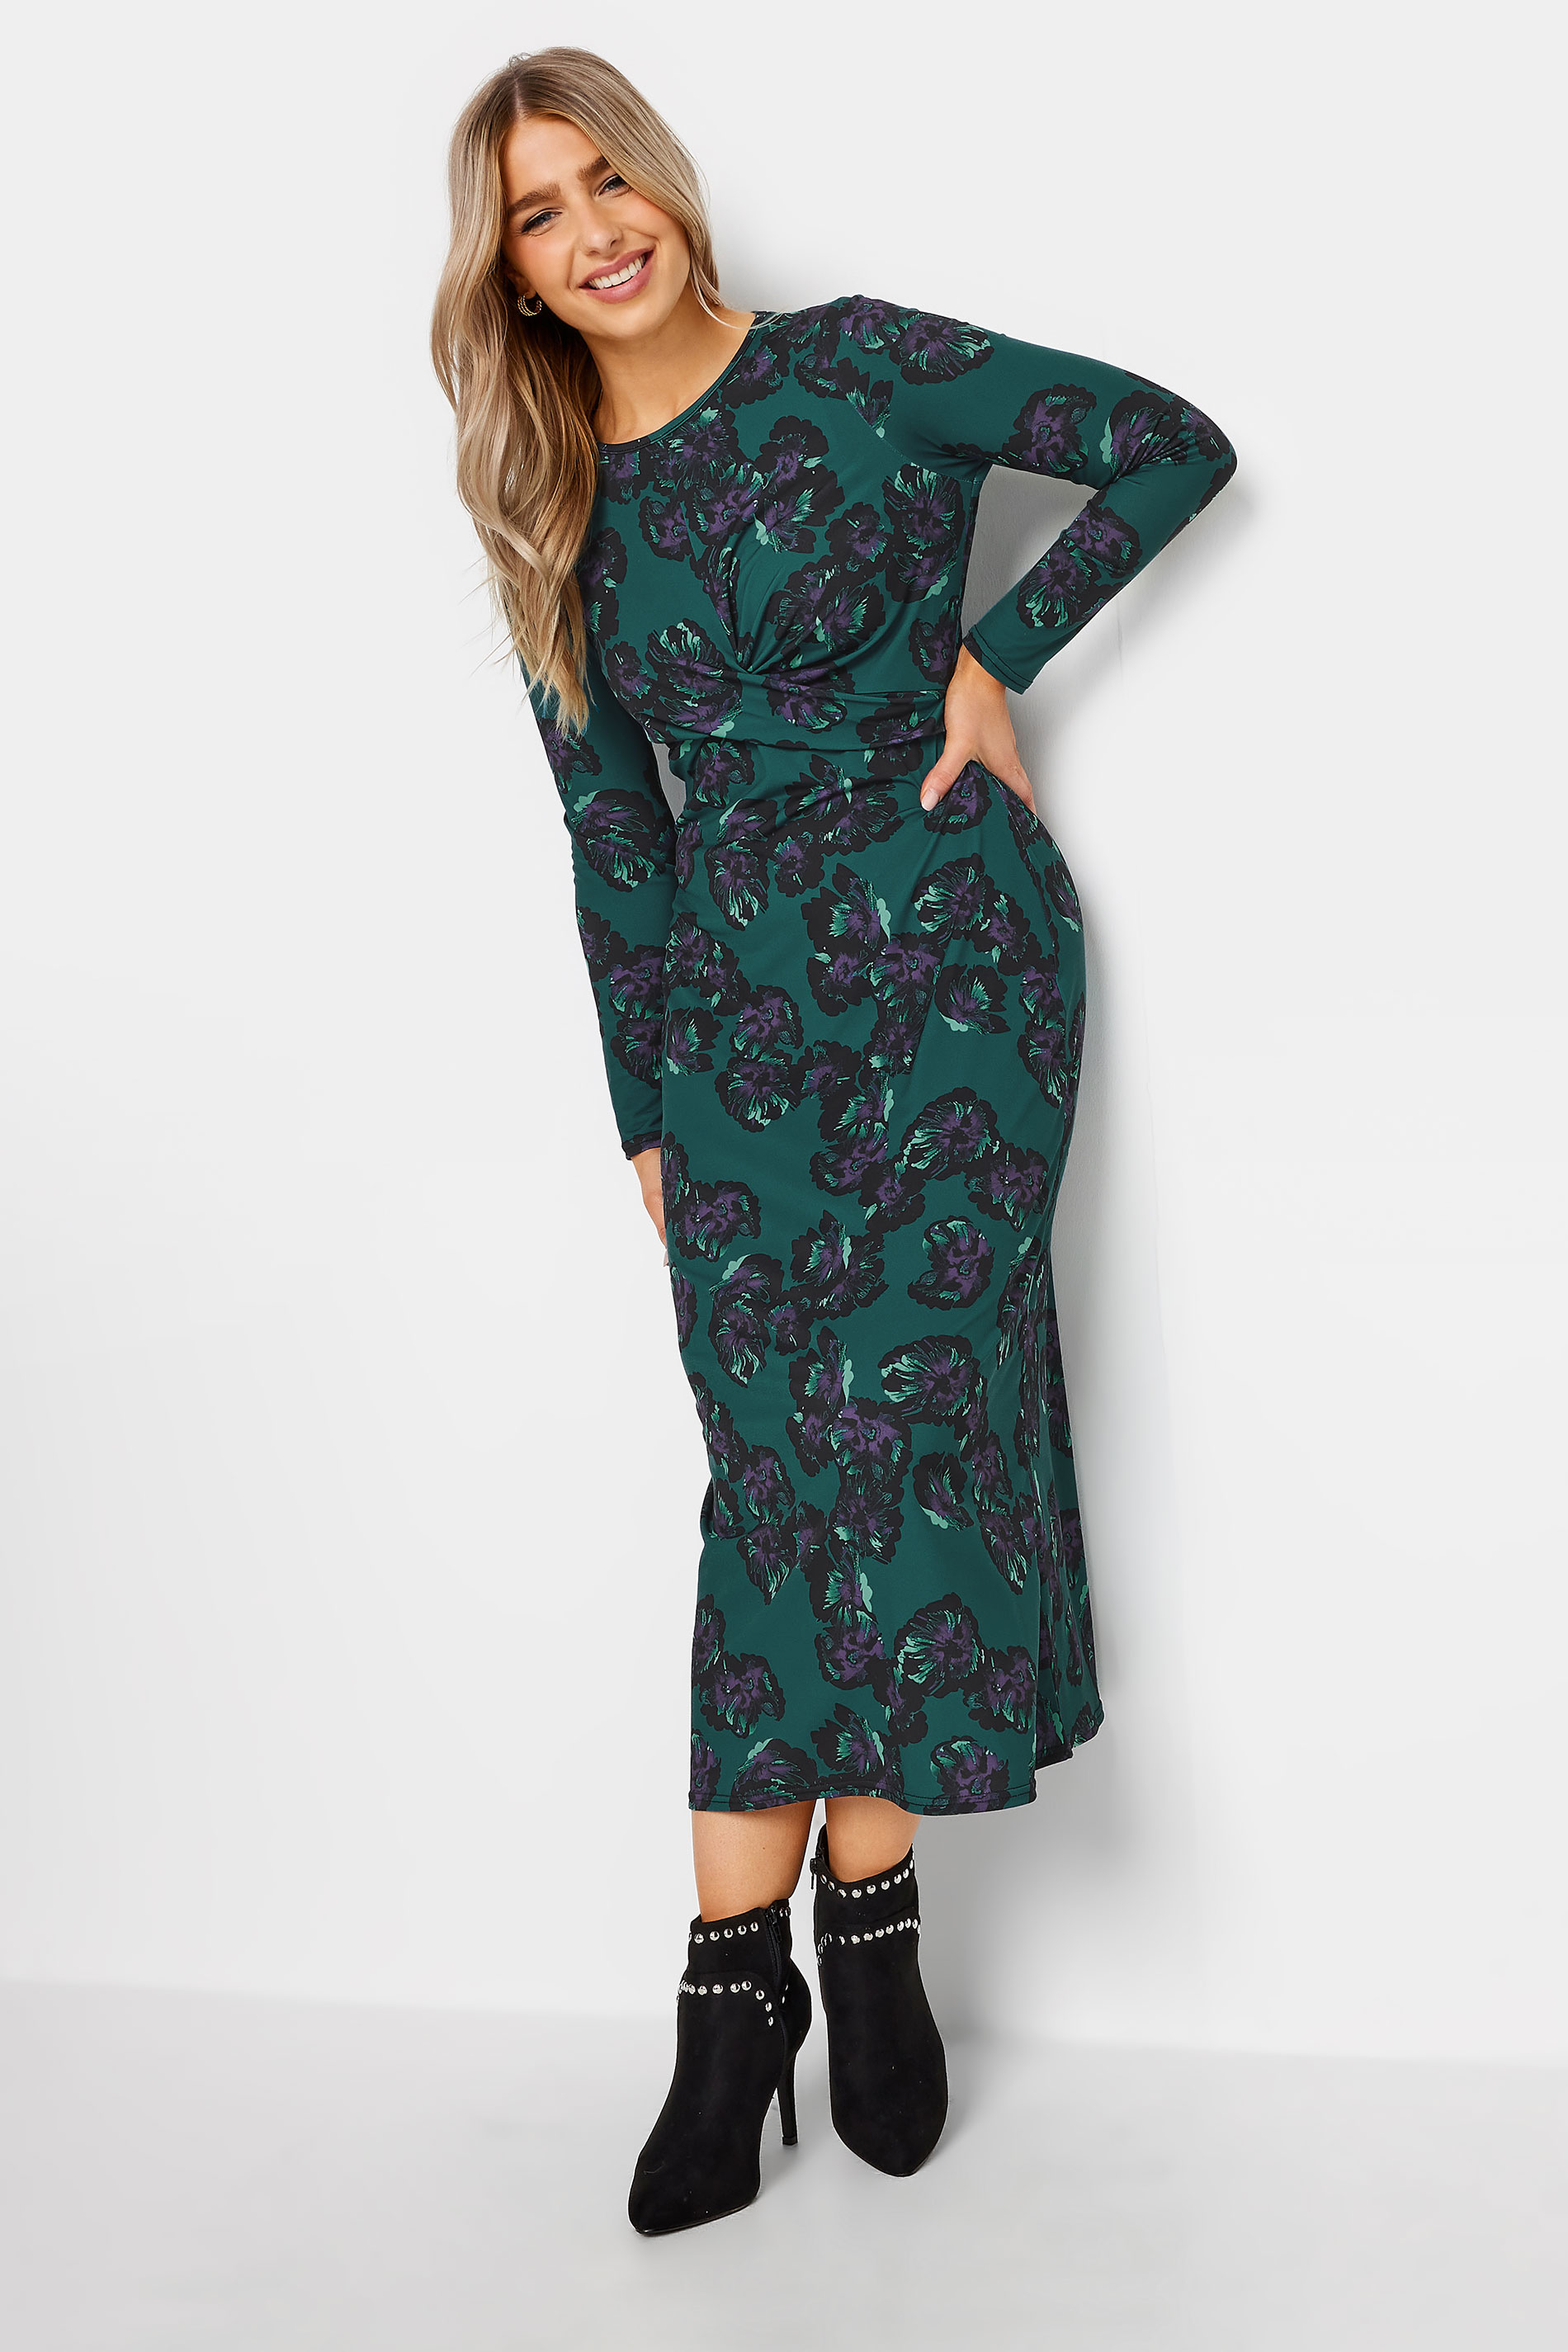 M&Co Dark Green Floral Twist Midaxi Dress | M&Co  3